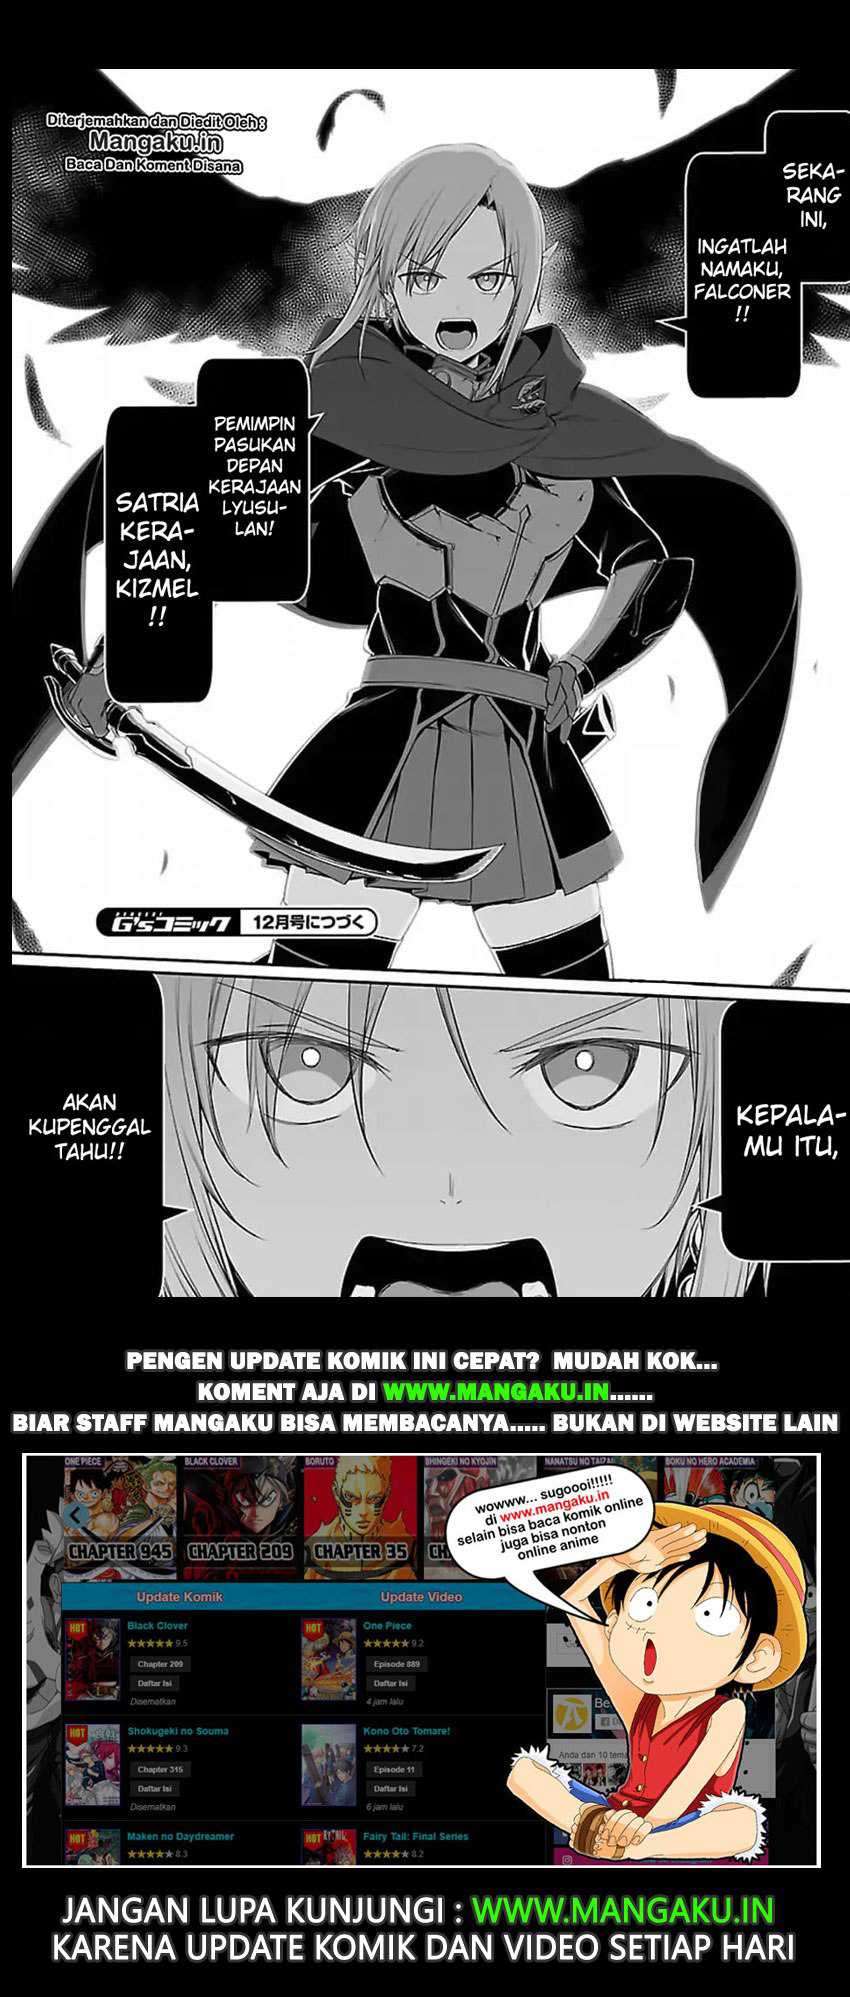 Komik Sword Art Online Progressive Chapter 39